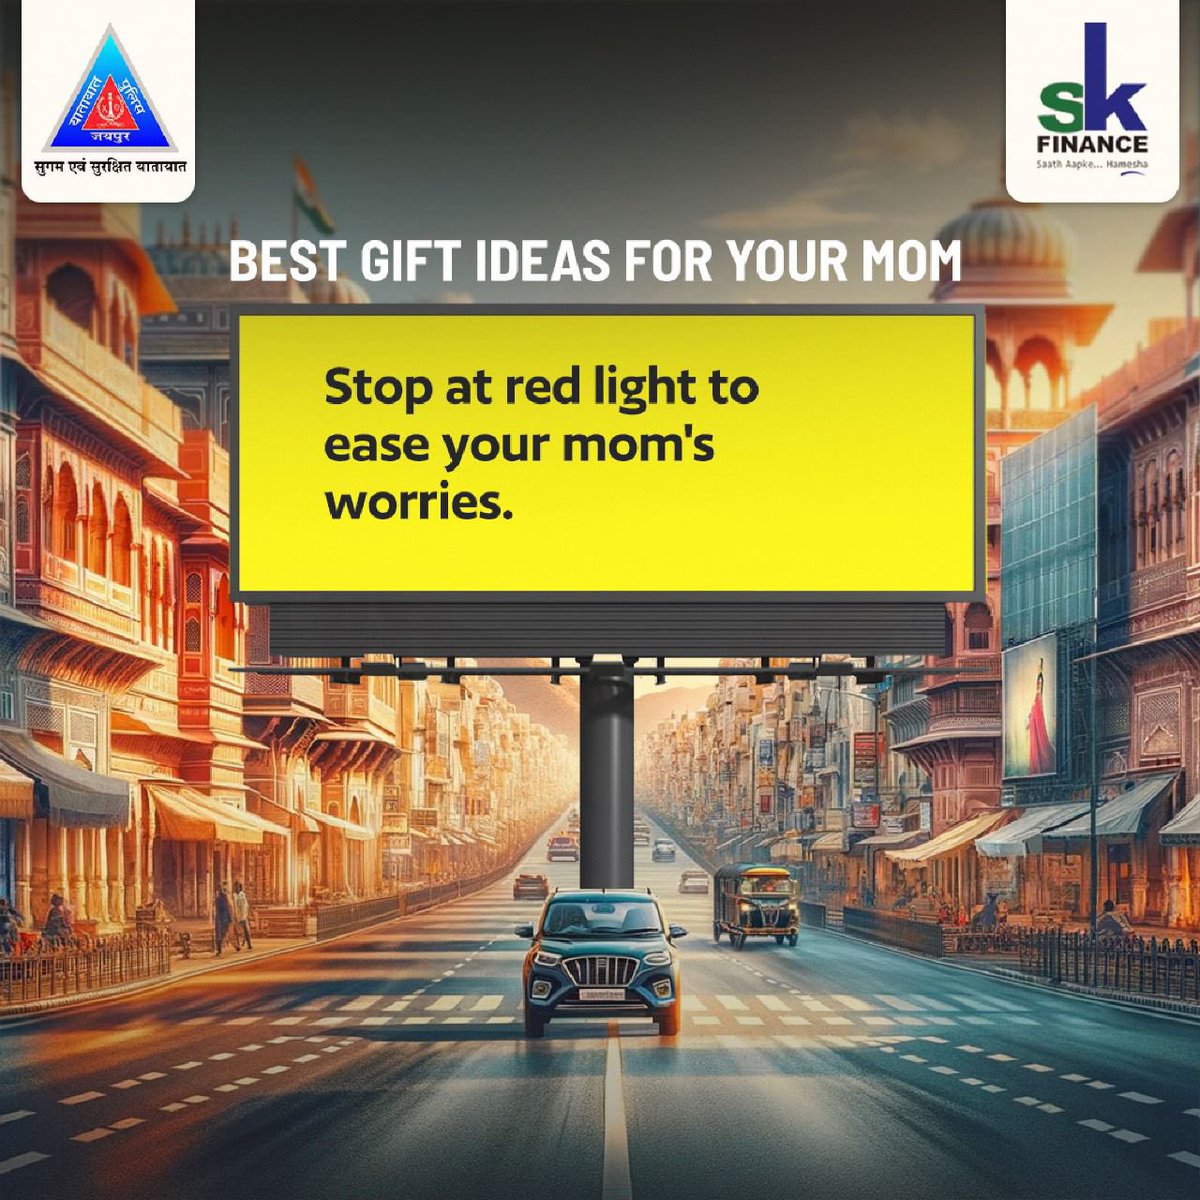 सिग्नल तोड़कर घर पहुंचने की जल्दी आपको, आपकी माँ से हमेशा के लिए दूर कर सकती है।   

#JaipurTrafficPolice #DriveSafe #SafetyFirst #FollowTrafficRules #MothersDay #MomKnowsBest #MotherCare #TravelSafe #StopAtRedLight